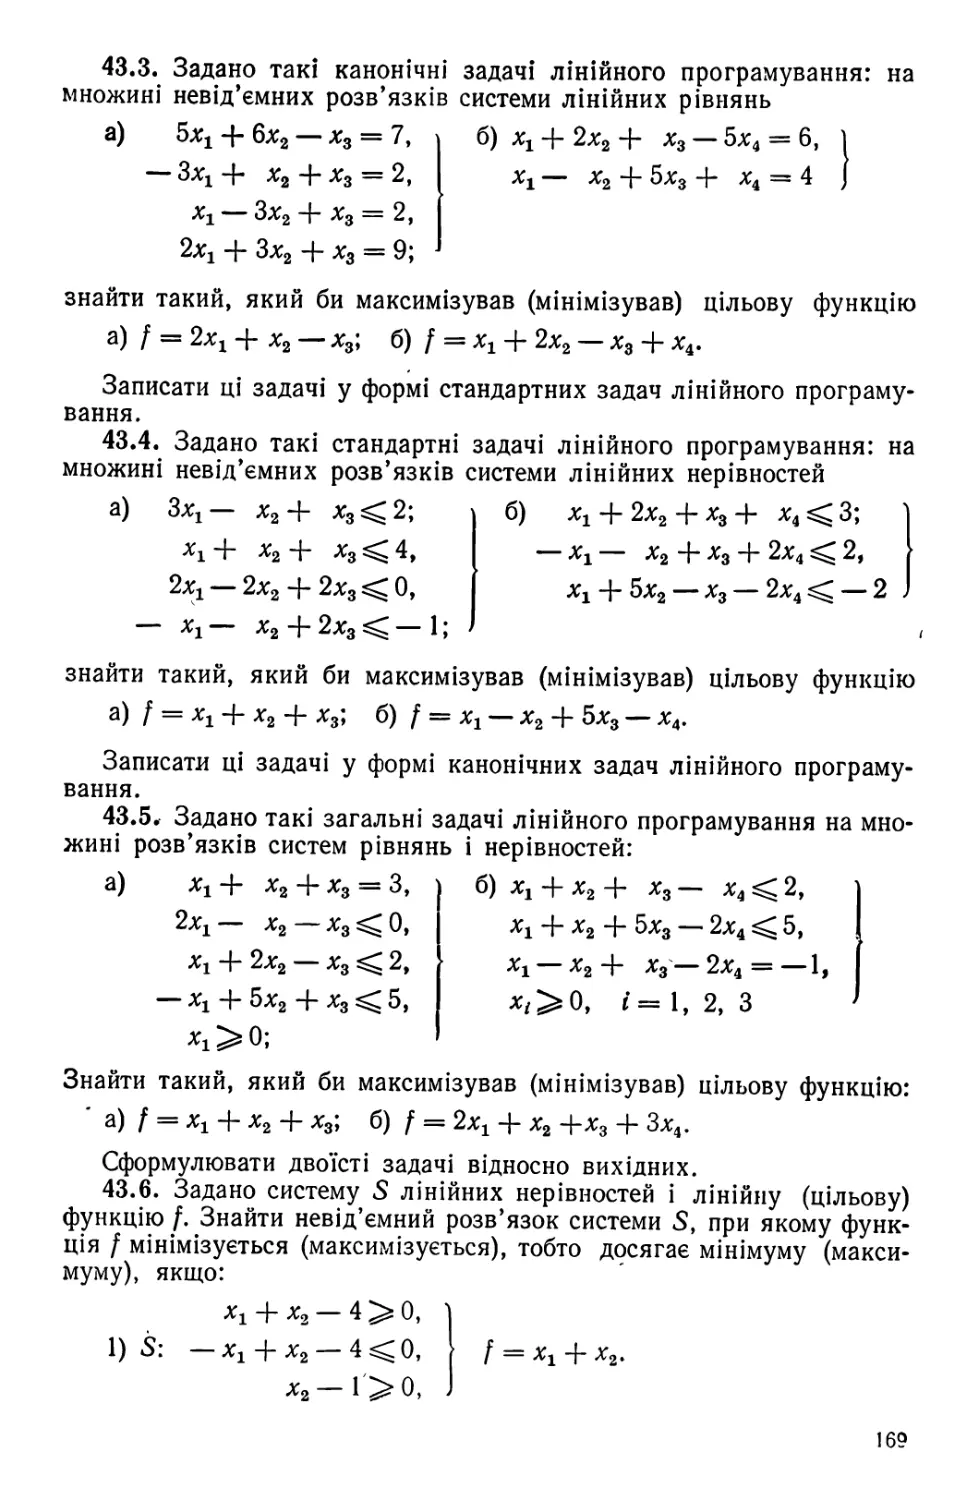 § 44. Симплекс-метод,  застосування  його до знаходження невід'ємних  розв'язків систем лінійних рівнянь та до розв'язування систем лінійних нерівностей